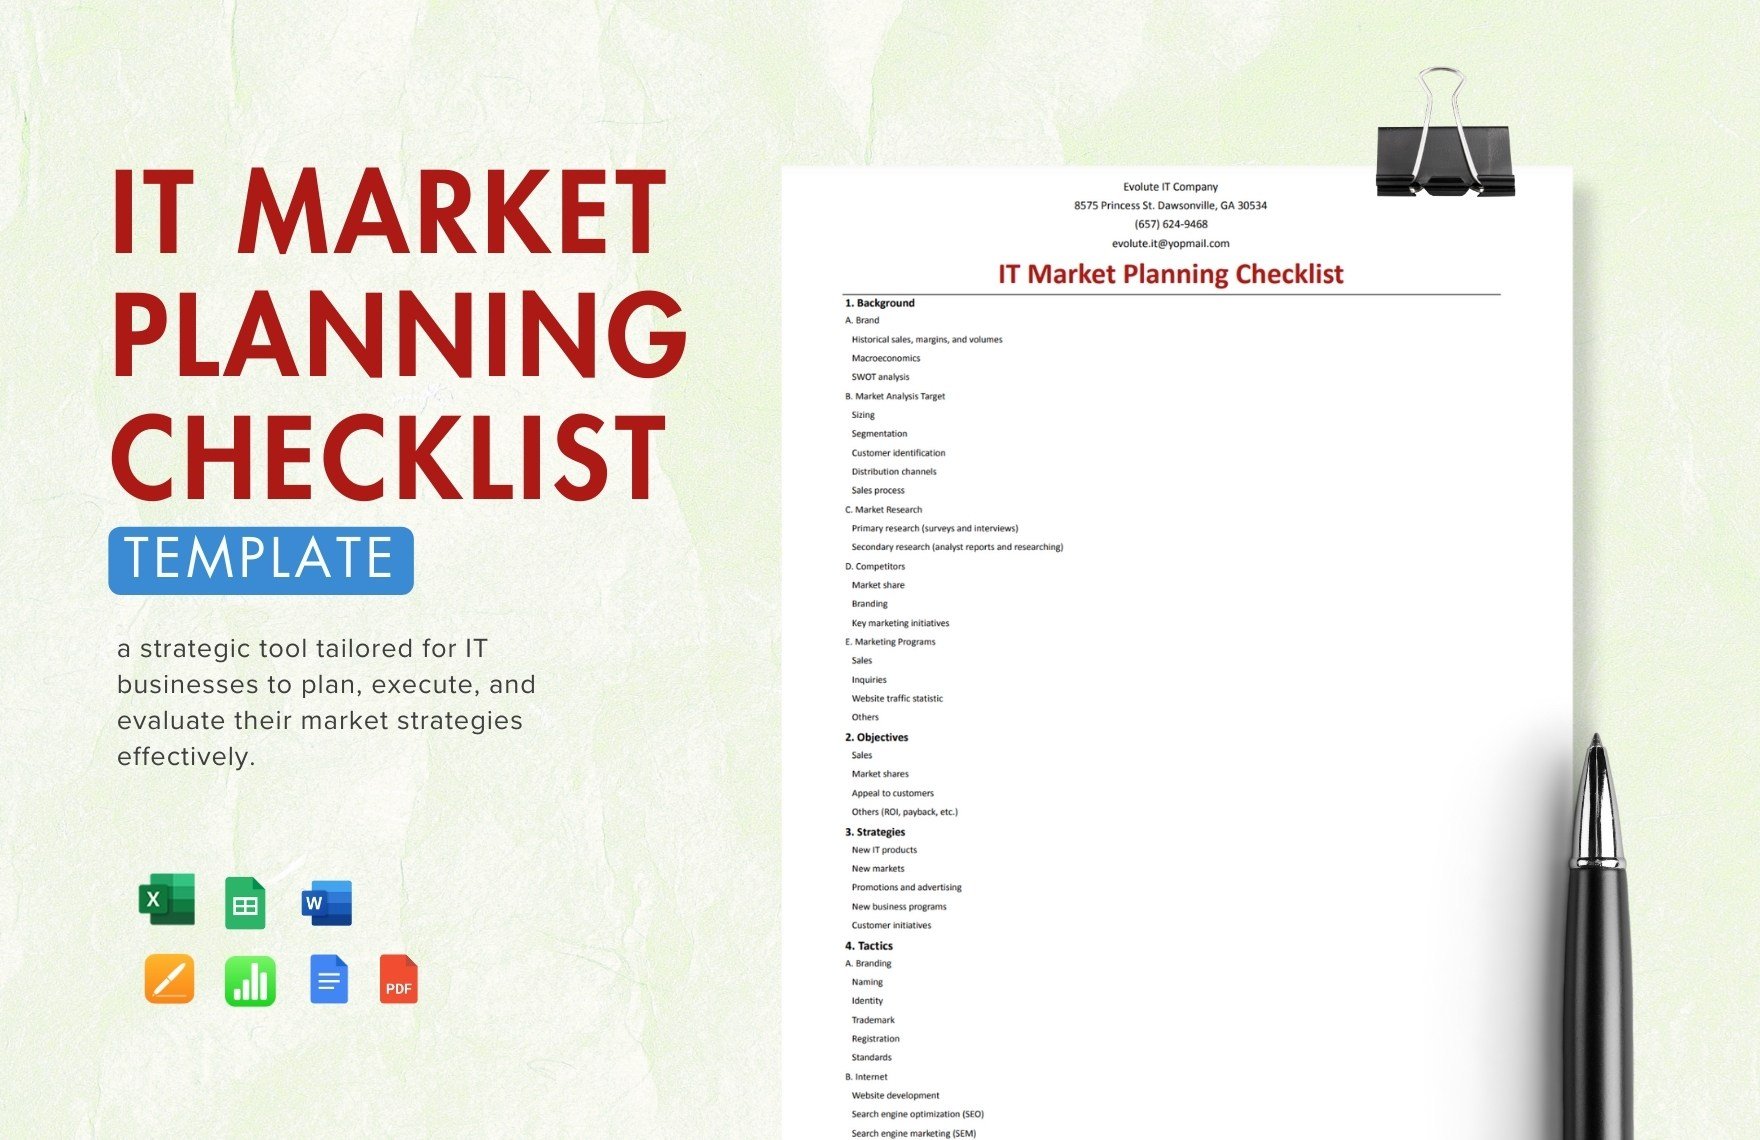 IT Market Planning Checklist Template